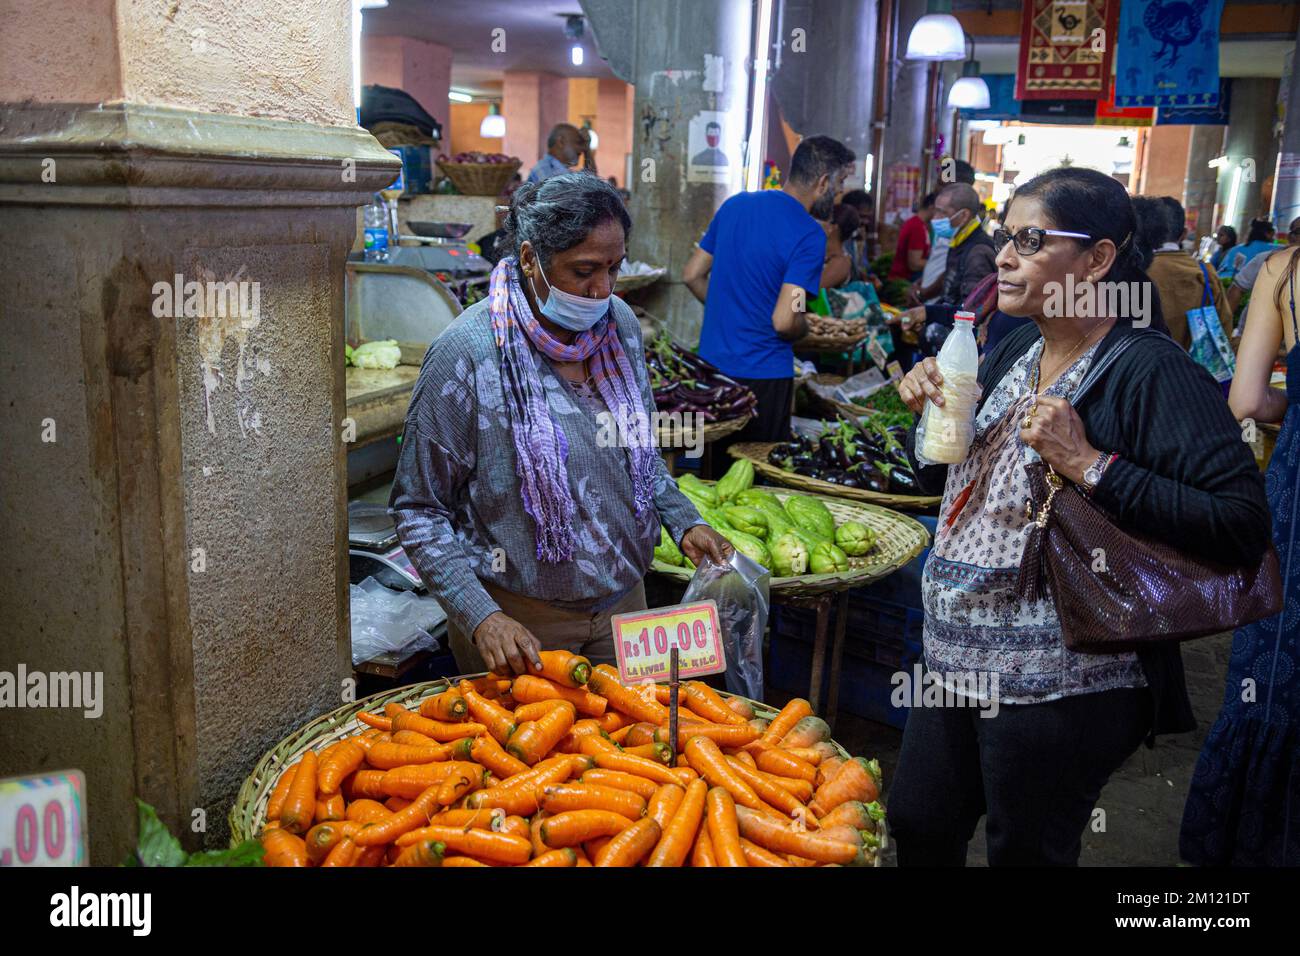 Marché central de l'île Maurice, Afrique : ce marché animé en plein air offre une variété de produits à vendre, notamment des fruits, des herbes, des épices et des potions. Banque D'Images